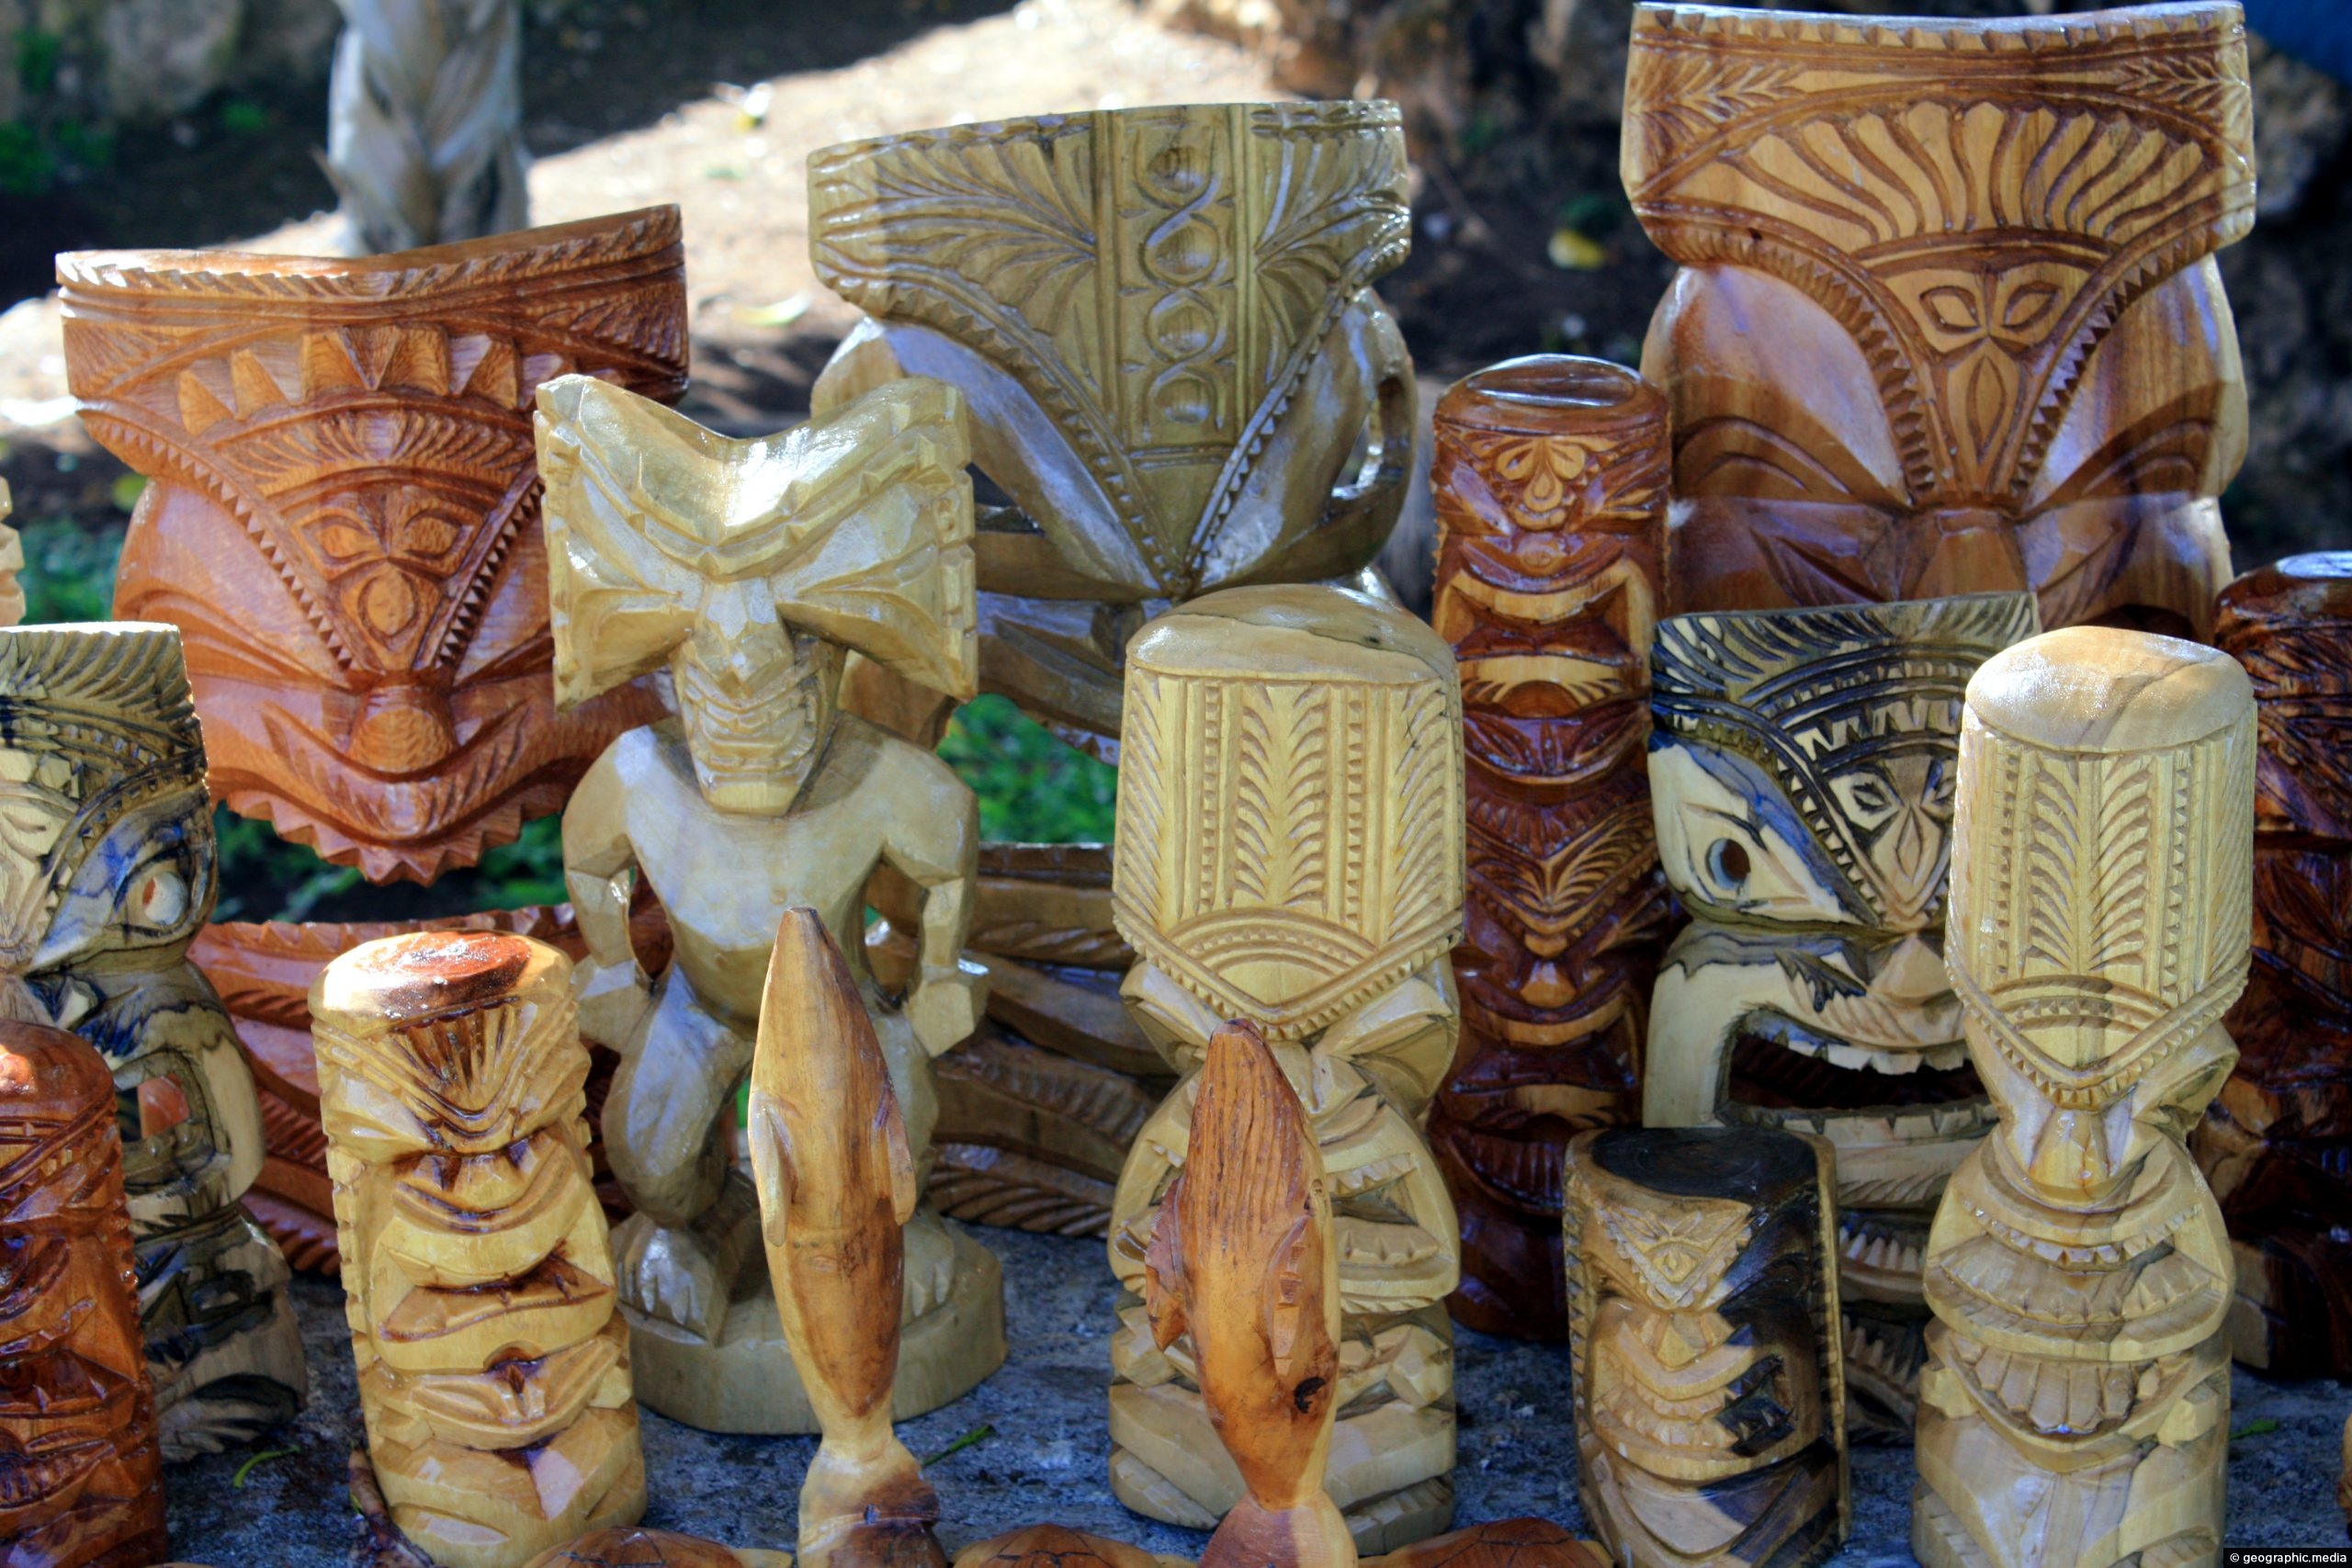 Tongan Souvenirs at Talamahu Market